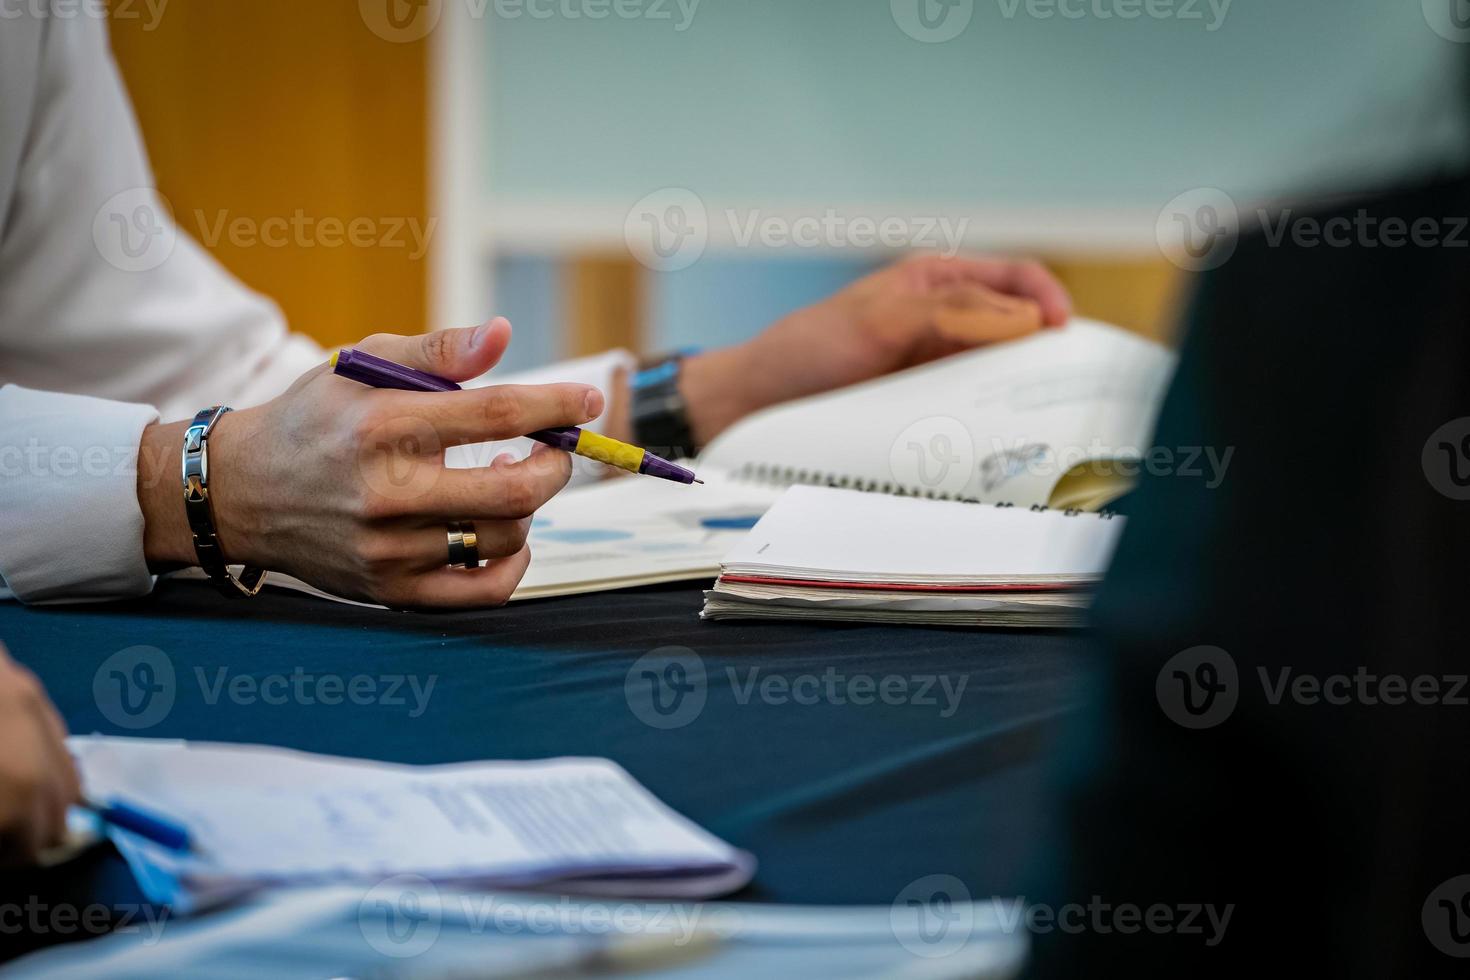 dicht bij de hand van de mens, hij houdt een paarse pen vast en concentreert zich om de docent te luisteren terwijl hij het handboek op tafel opent. foto